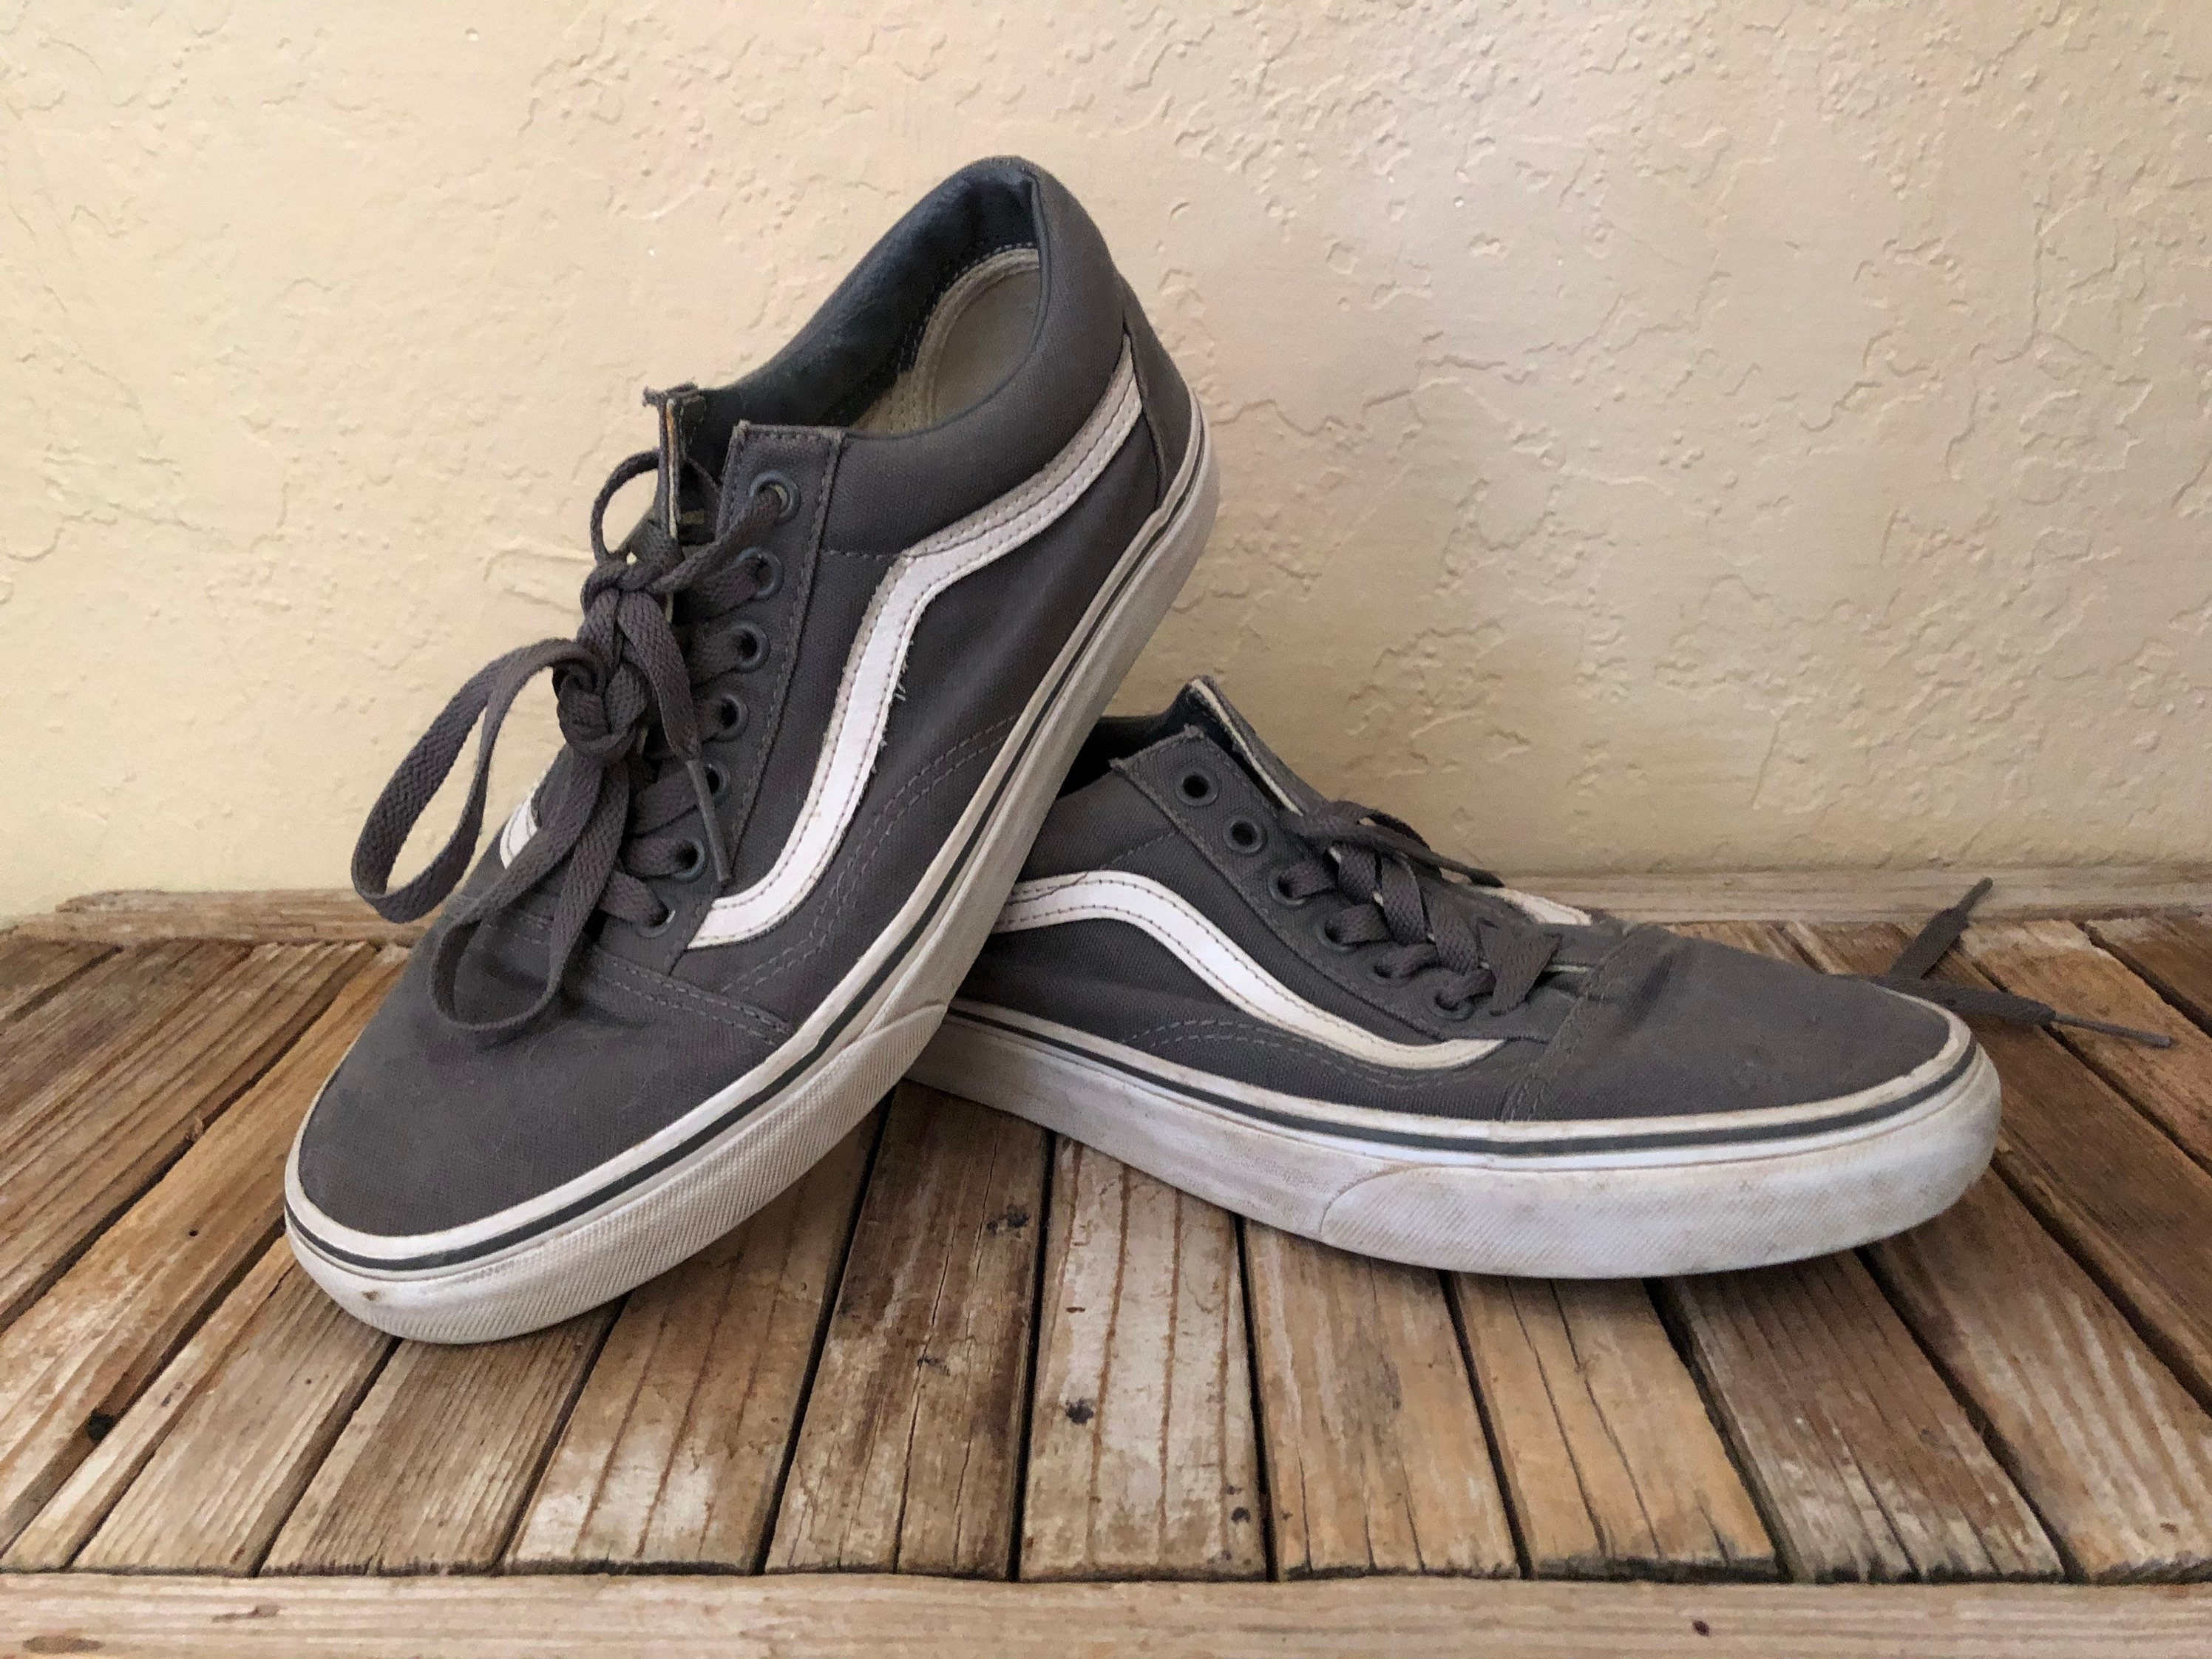 VANS Old Skool Sneakers For Men - Buy Maroon Color VANS Old Skool Sneakers  For Men Online at Best Price - Shop Online for Footwears in India